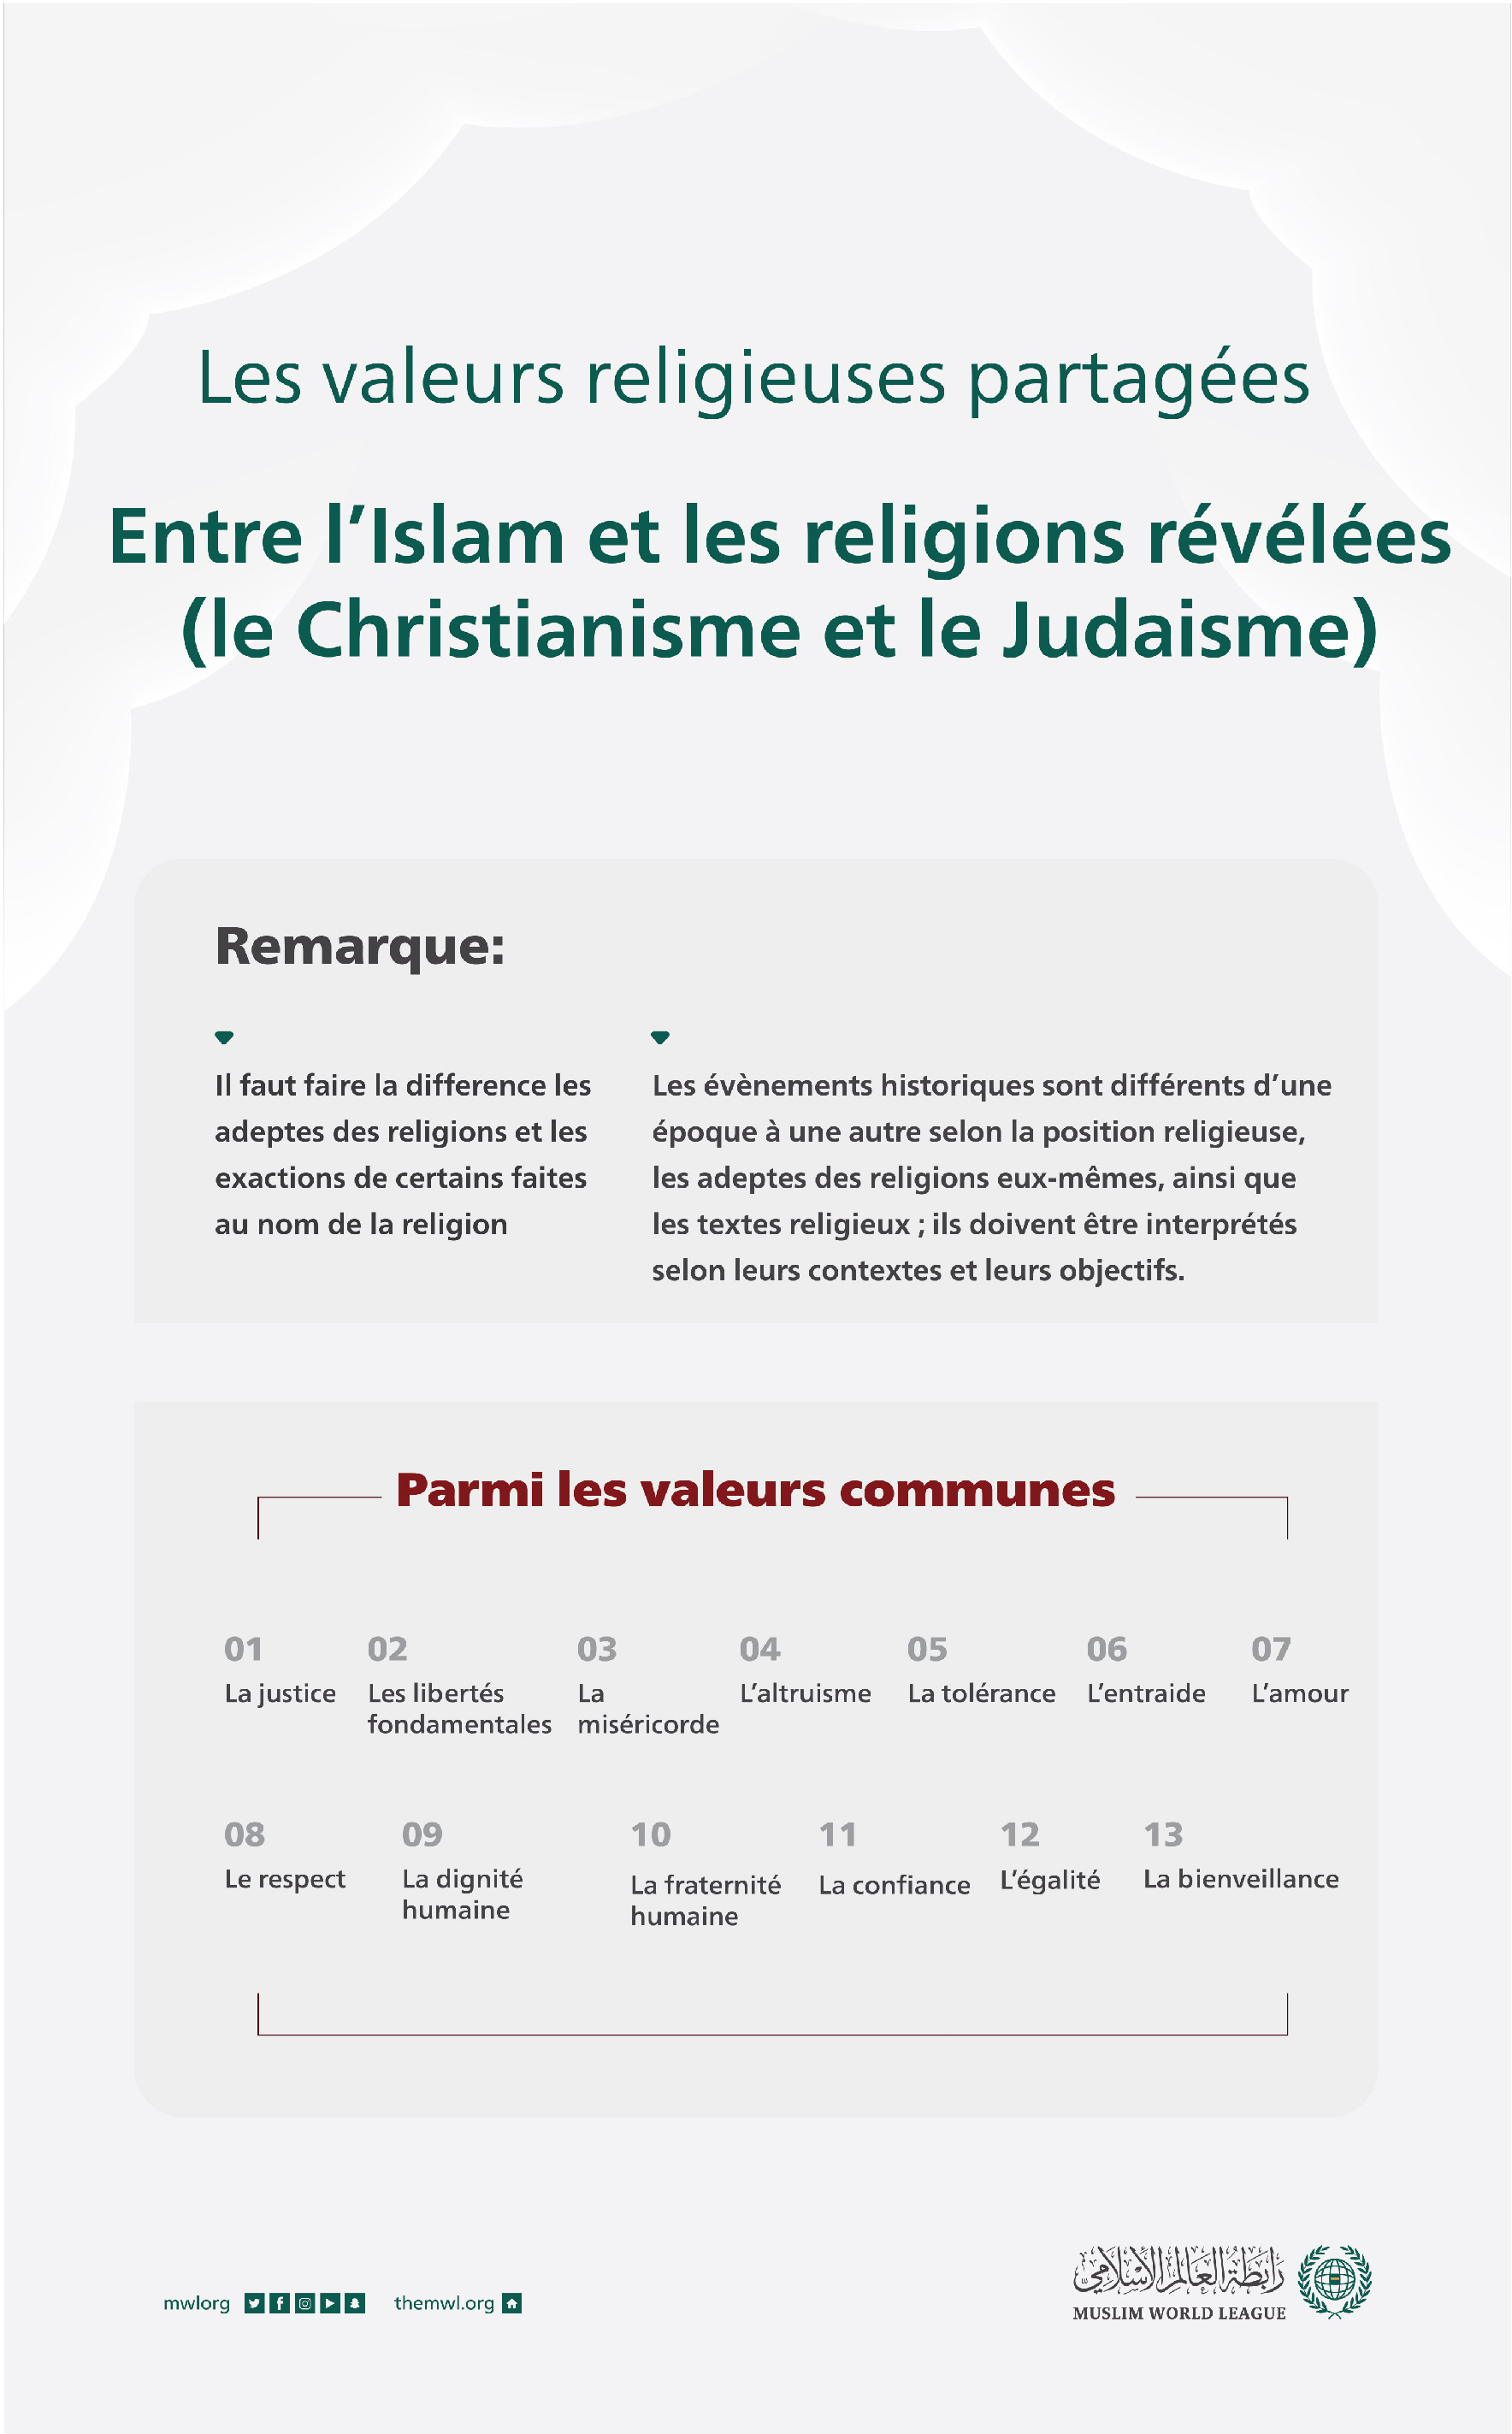 Éclaircissement important concernant les valeurs communes entre l’Islam, le Christianisme et le judaïsme :